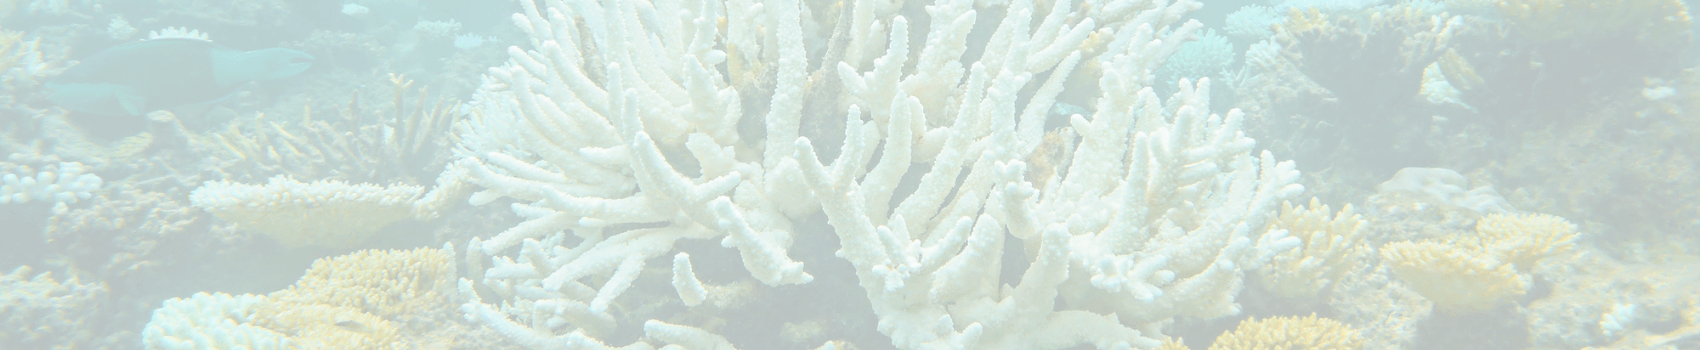 Efectos de los filtros UV sobre el coral